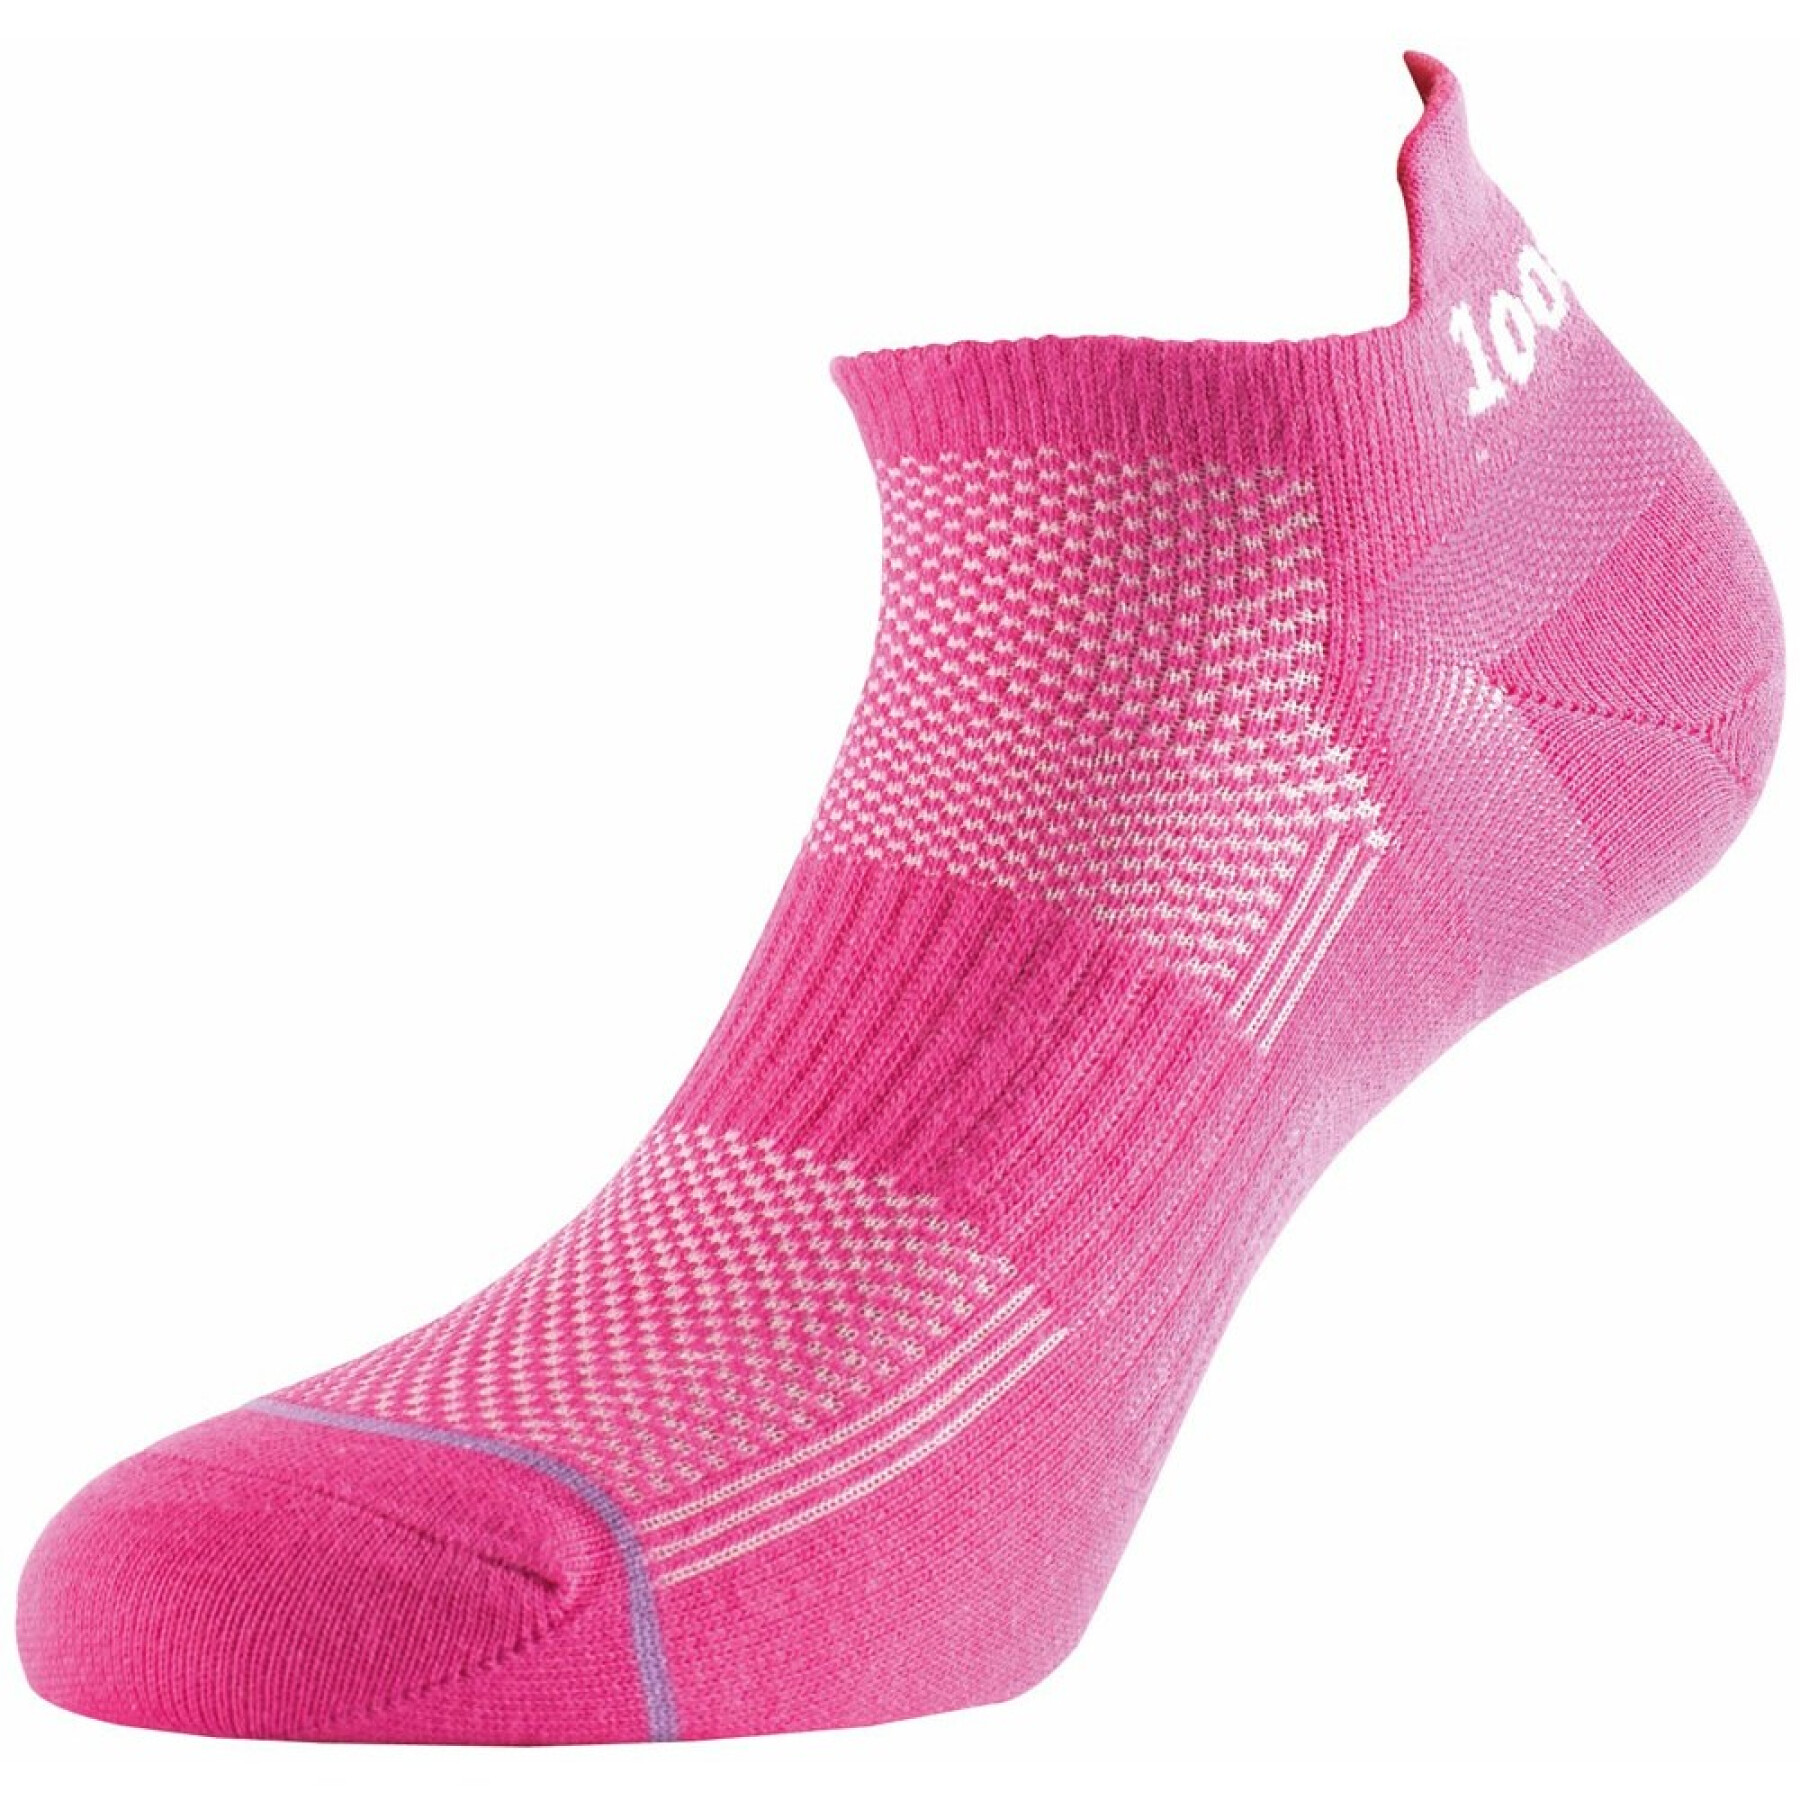 Women's socks 1000 Mile Ultimate Tactel